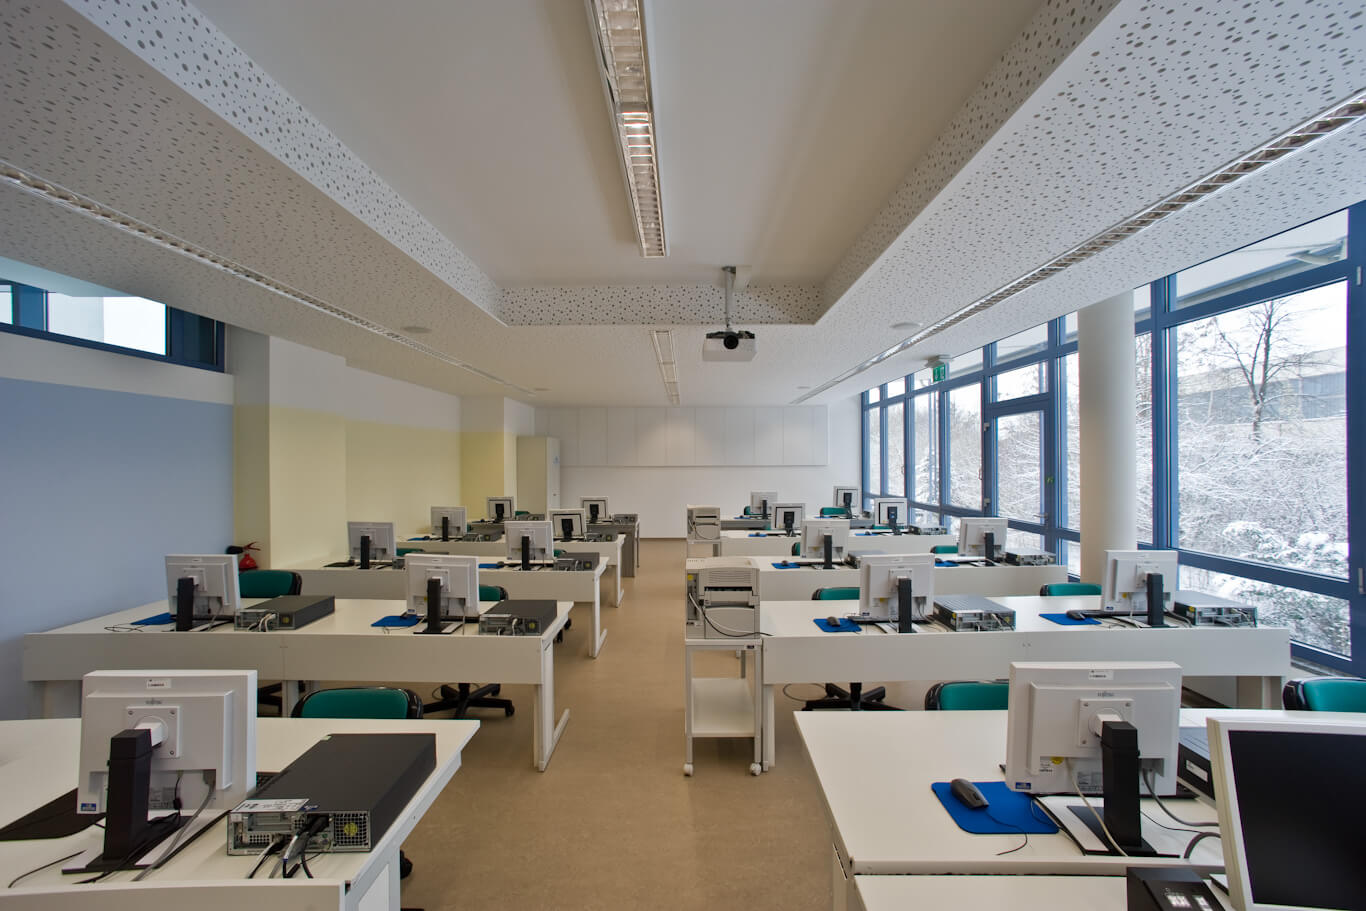 Blick in den großen Computerraum des IHK Bildungszentrums nach der Modernisierung durch BCH